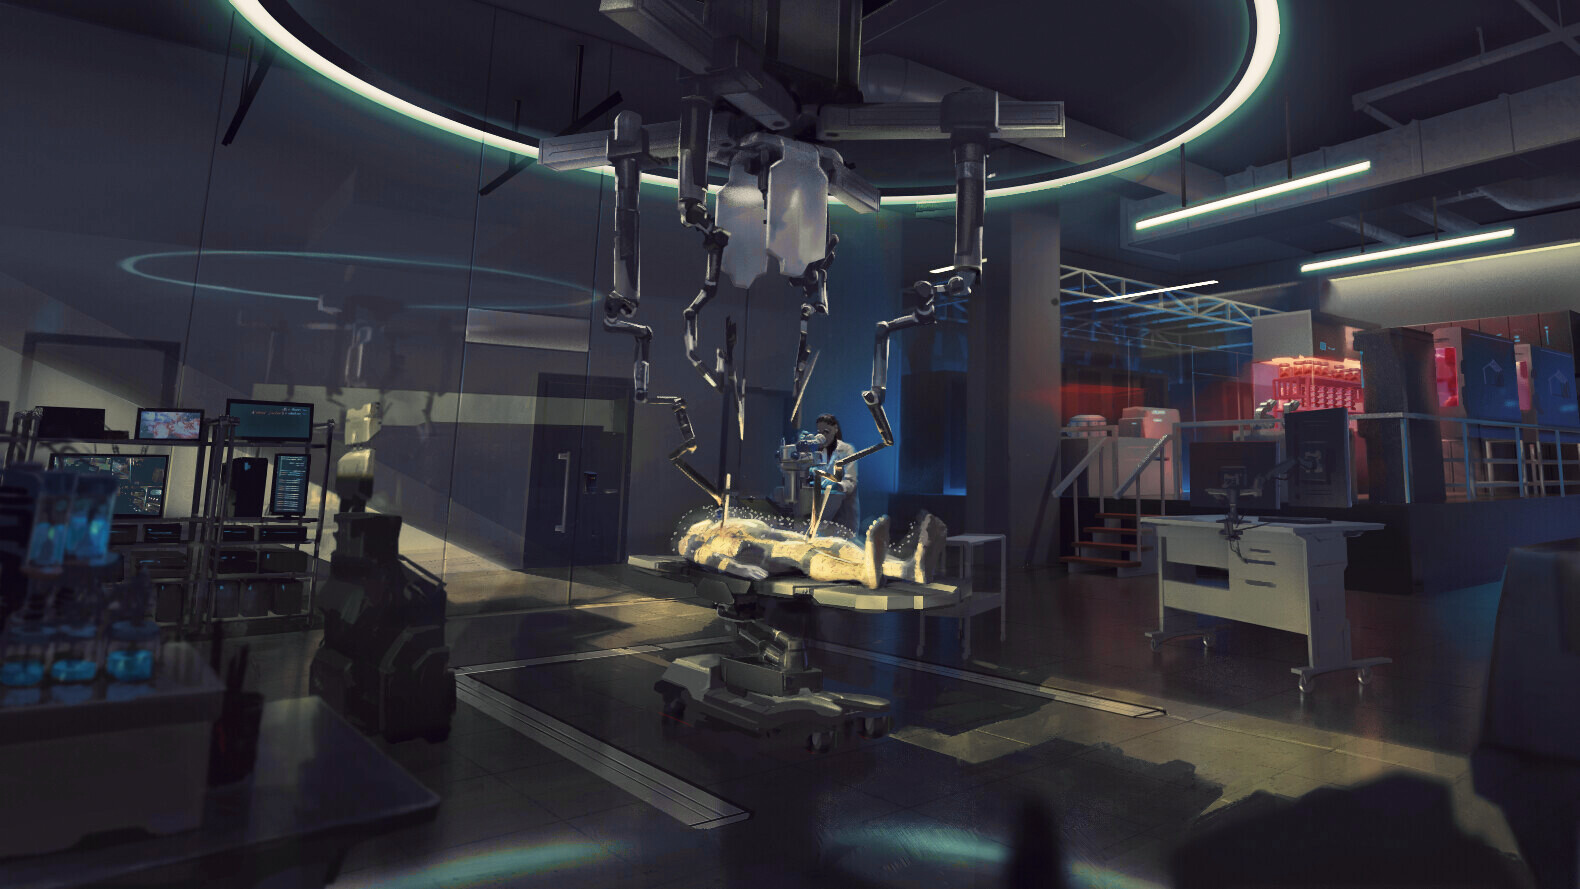 ArtStation - Interior design - Frankenstein's lab